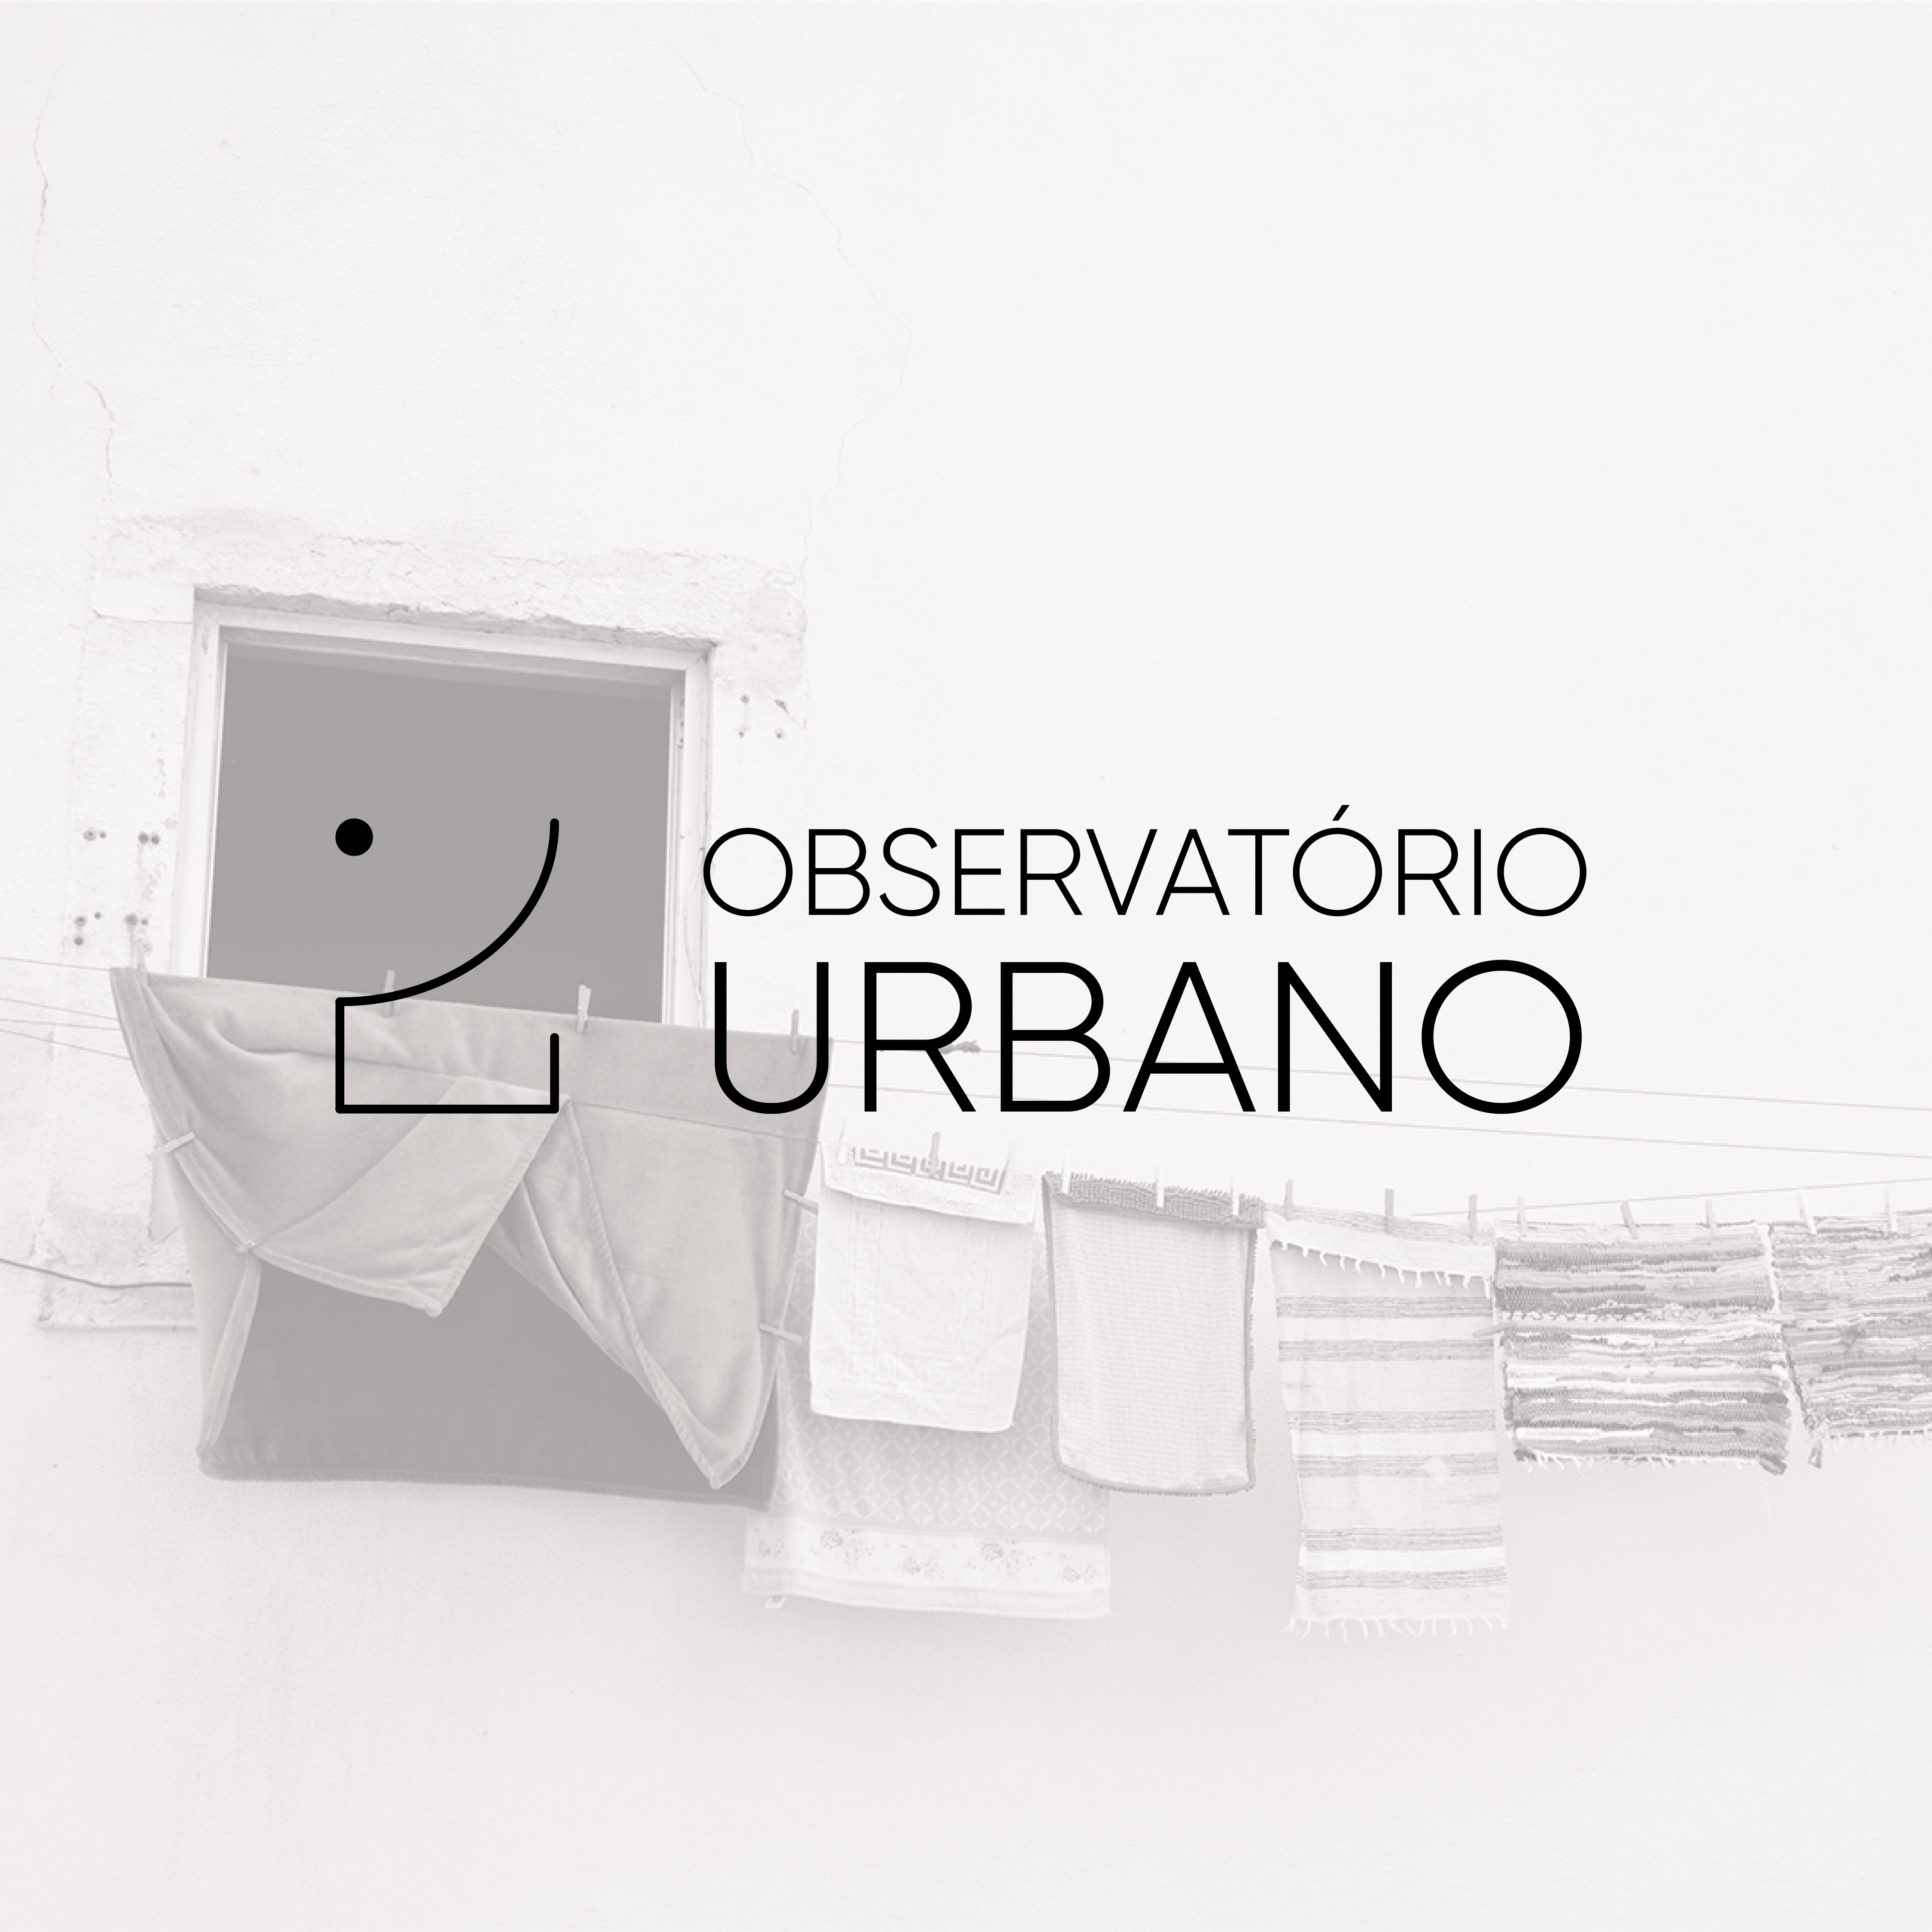 Alumni da FA.ULisboa, Ana Carolina Helena, Inês Soares e Manuel Caldeira,  criam projeto “Observatório Urbano”, uma plataforma dedicada ao espaço construído.